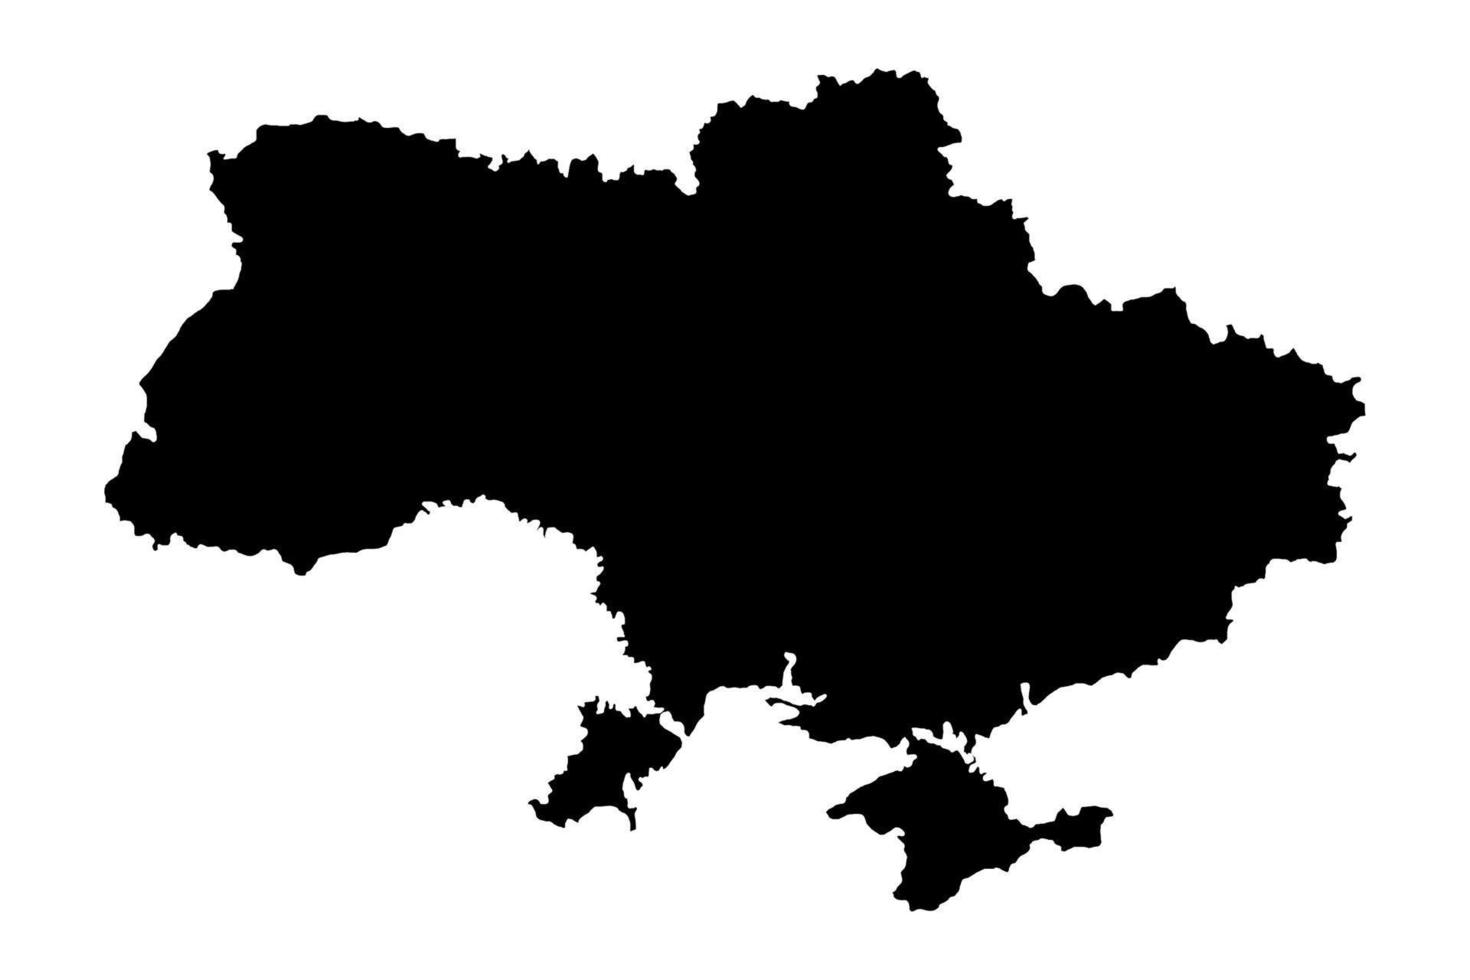 Ukraine. Silhouette der ukrainischen Landkarte. europäische Länder. Das ukrainische Territorium grenzt an die Krim. vektor